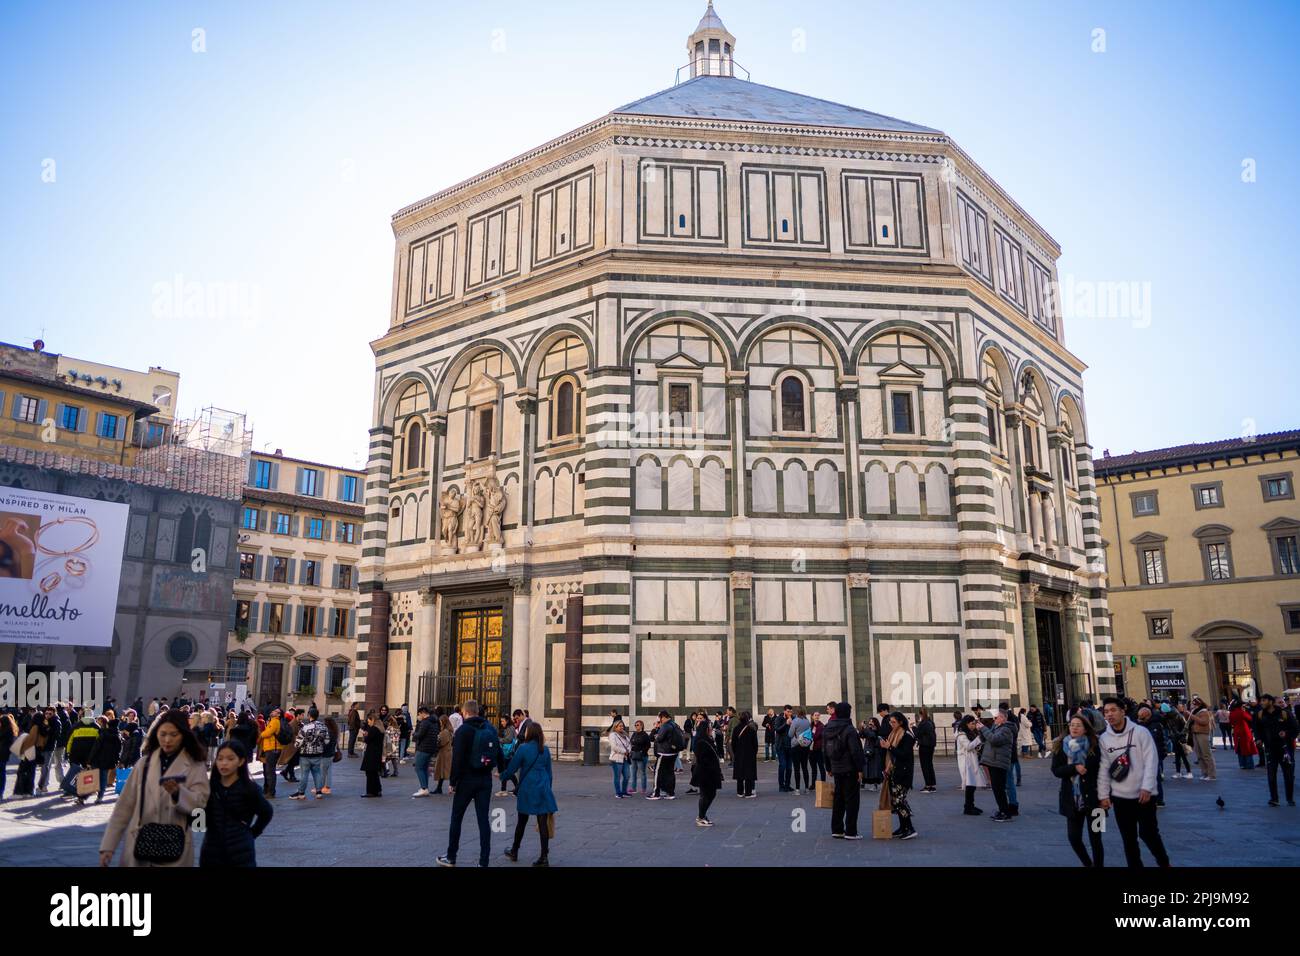 Das Baptisterium, das älteste Gebäude in Florenz, neben dem Dom. Florenz, Italien Stockfoto